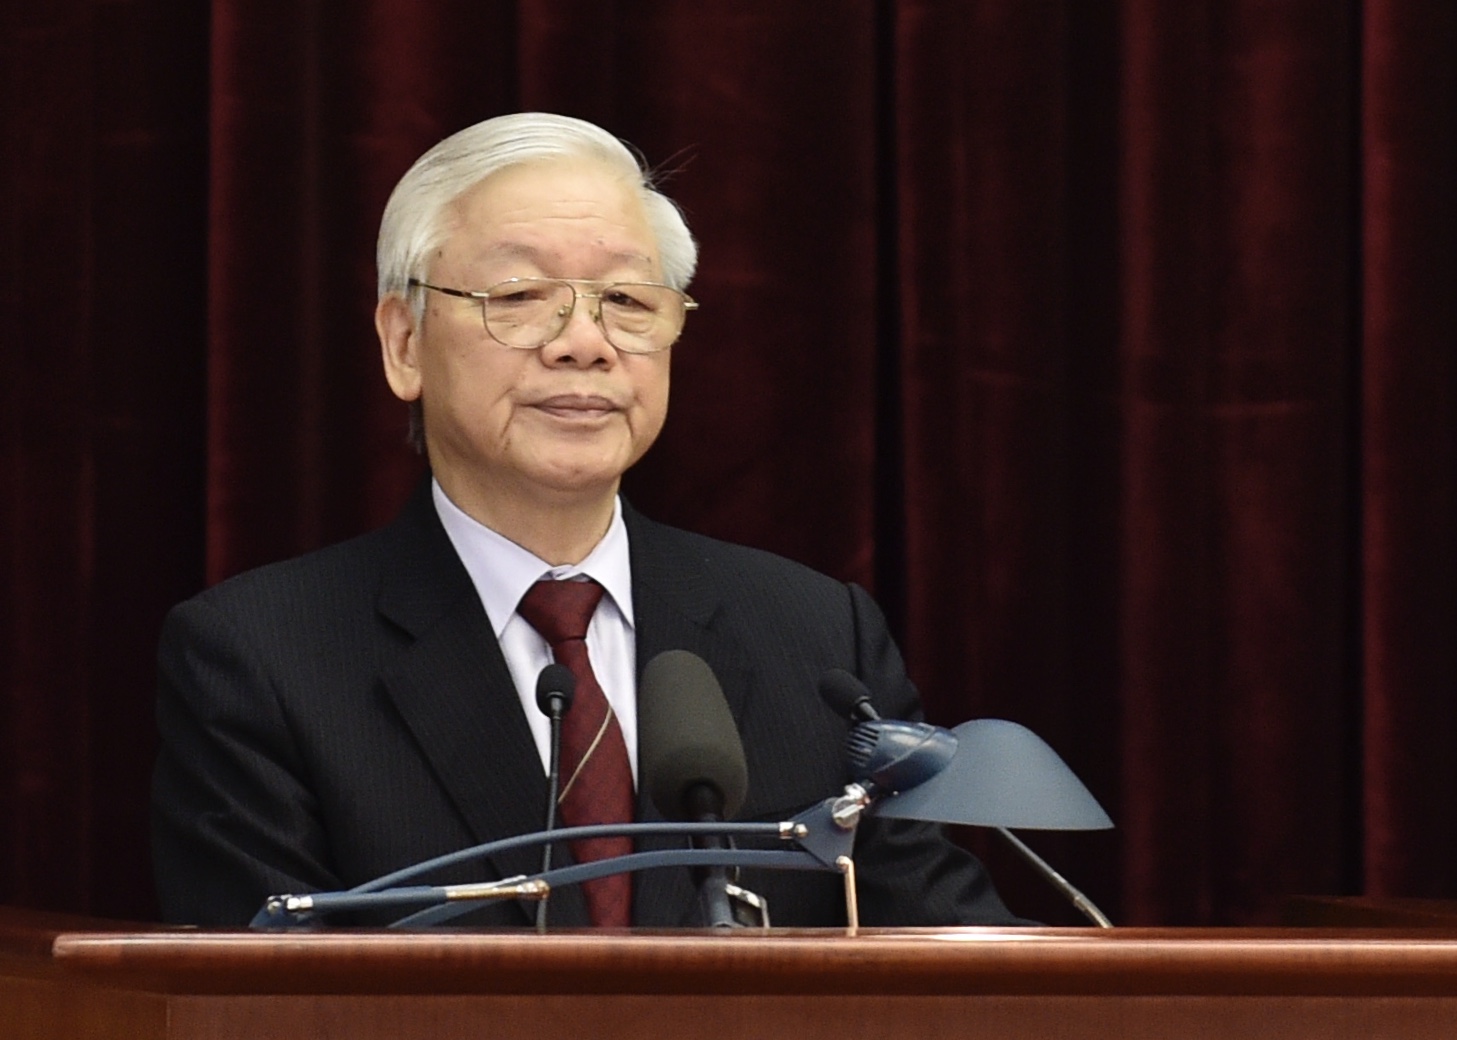 Tổng Bí thư, Chủ tịch nước Nguyễn Phú Trọng nhấn mạnh nội dung và thời gian của Hội nghị Trung ương lần này không nhiều, nhưng những vấn đề bàn bạc và quyết định là rất hệ trọng. 